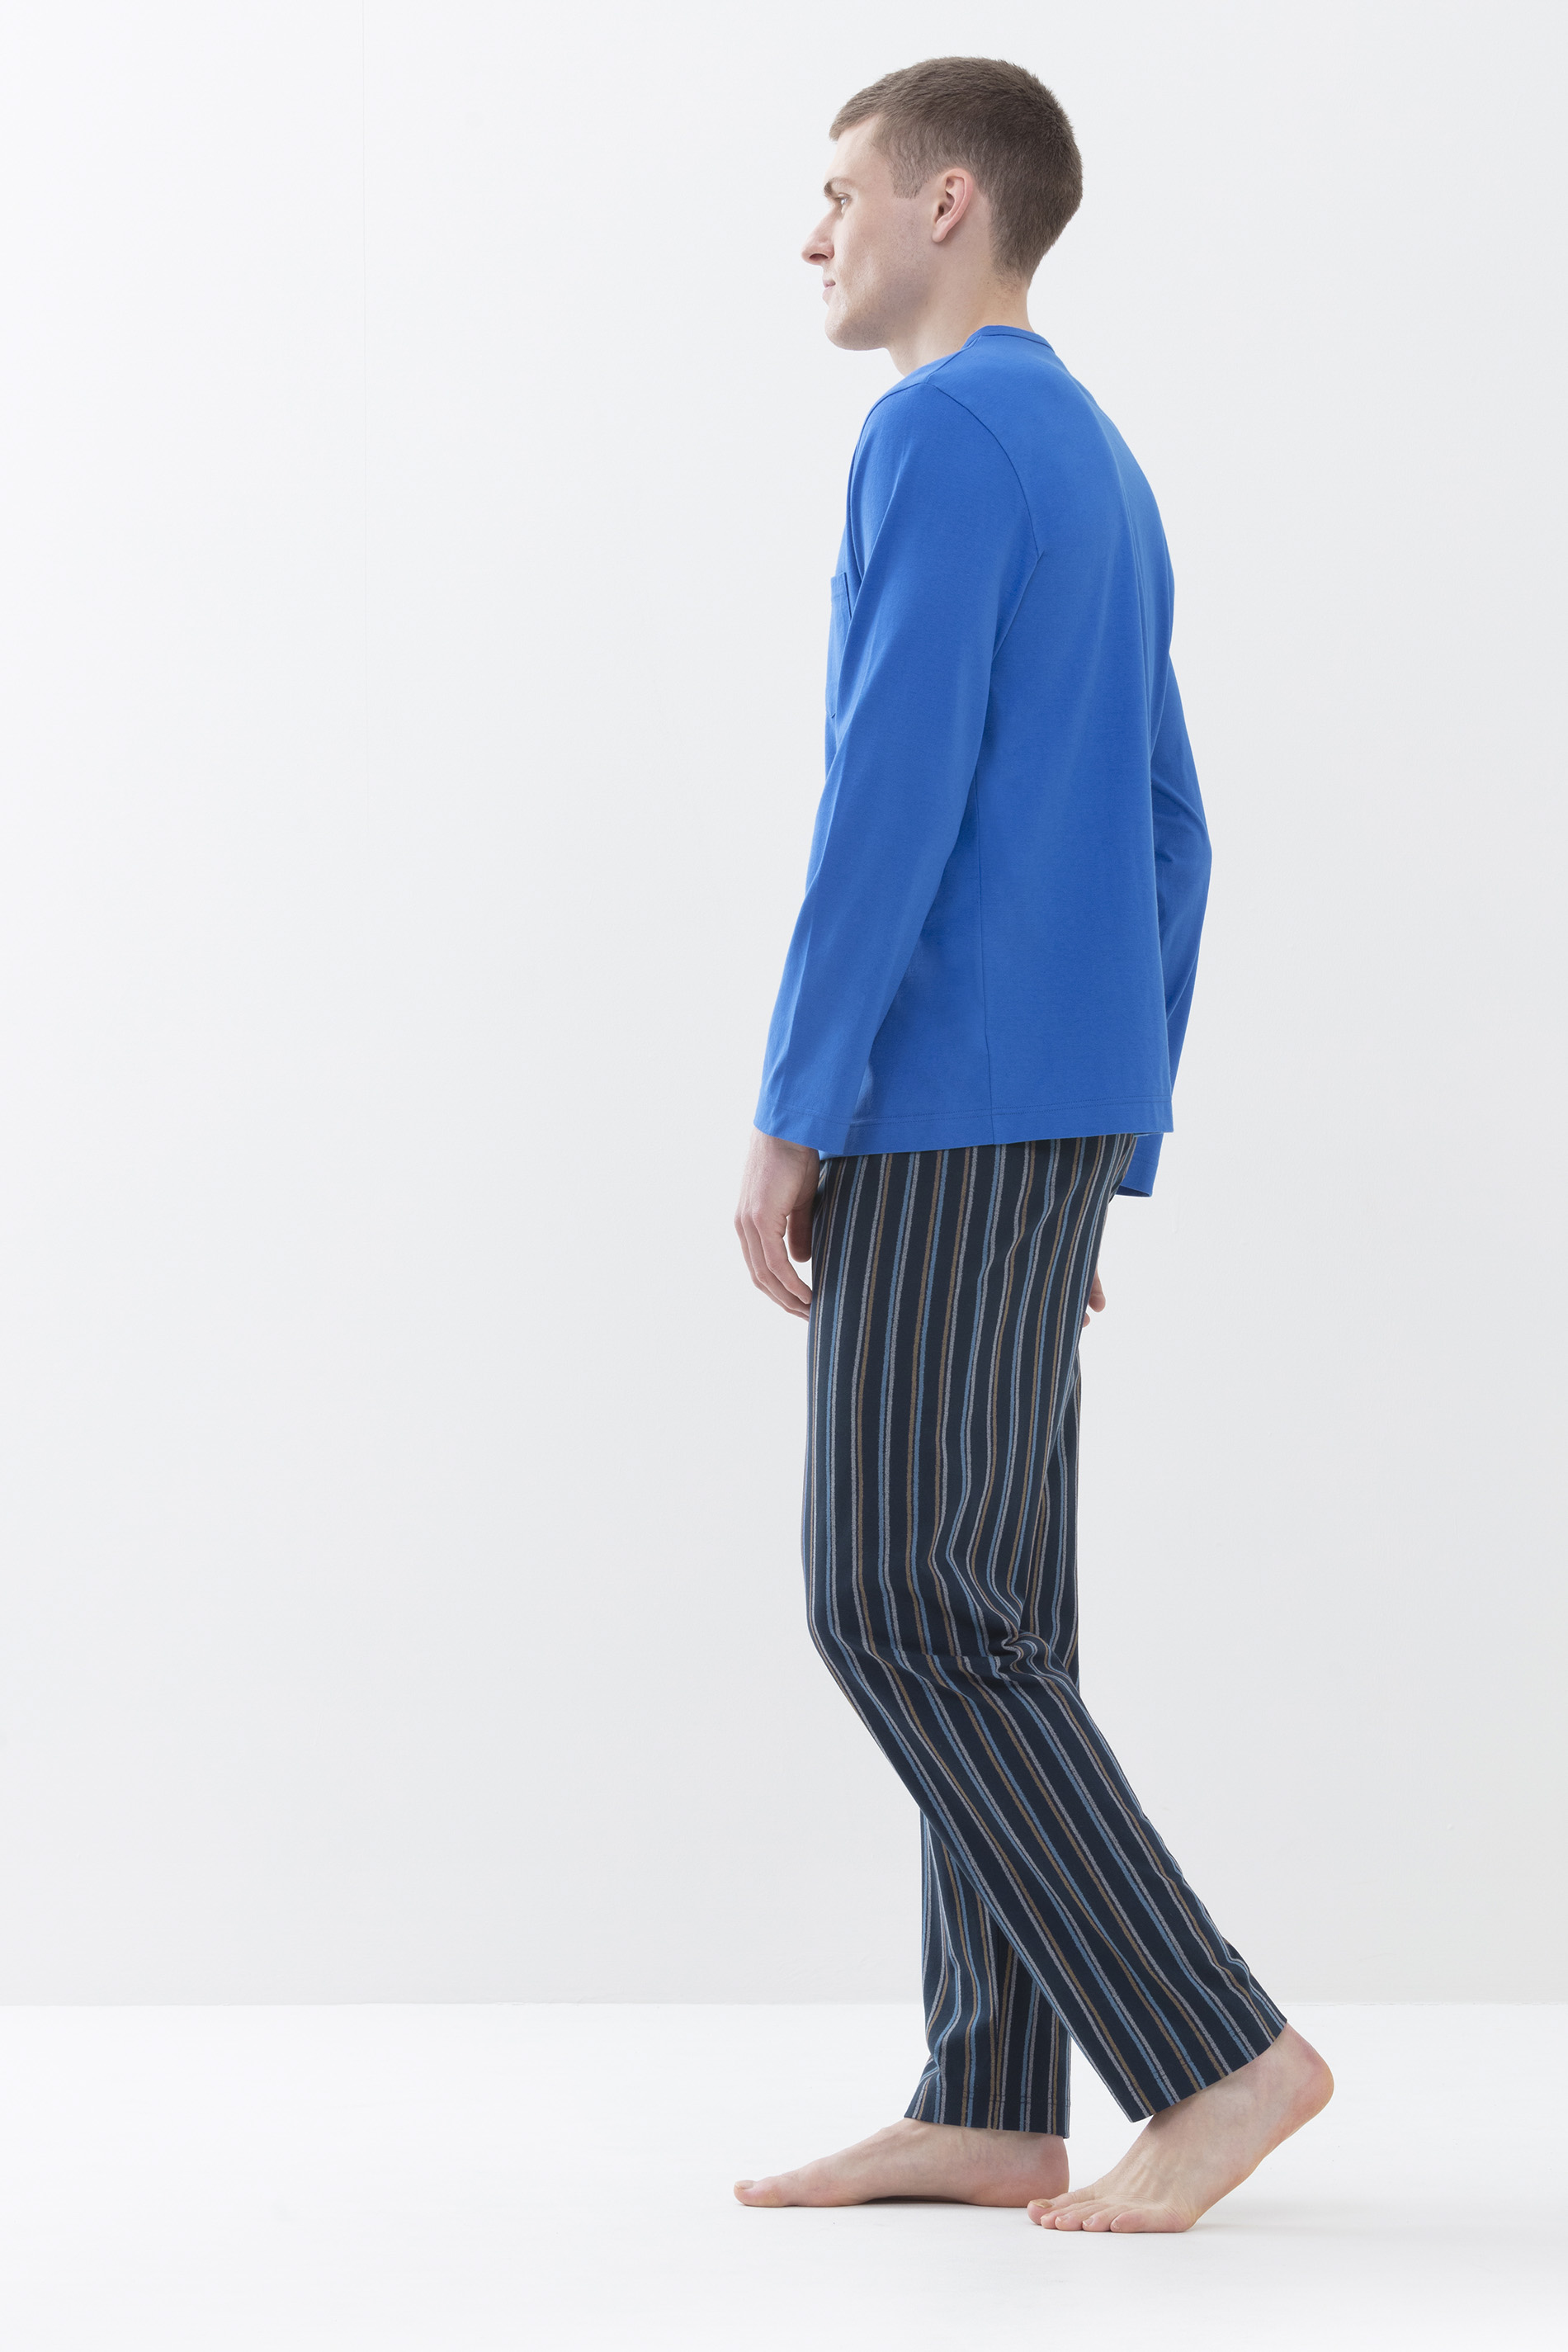 Schlafanzug Porcelain Blue Serie Unregular Stripes Detailansicht 02 | mey®